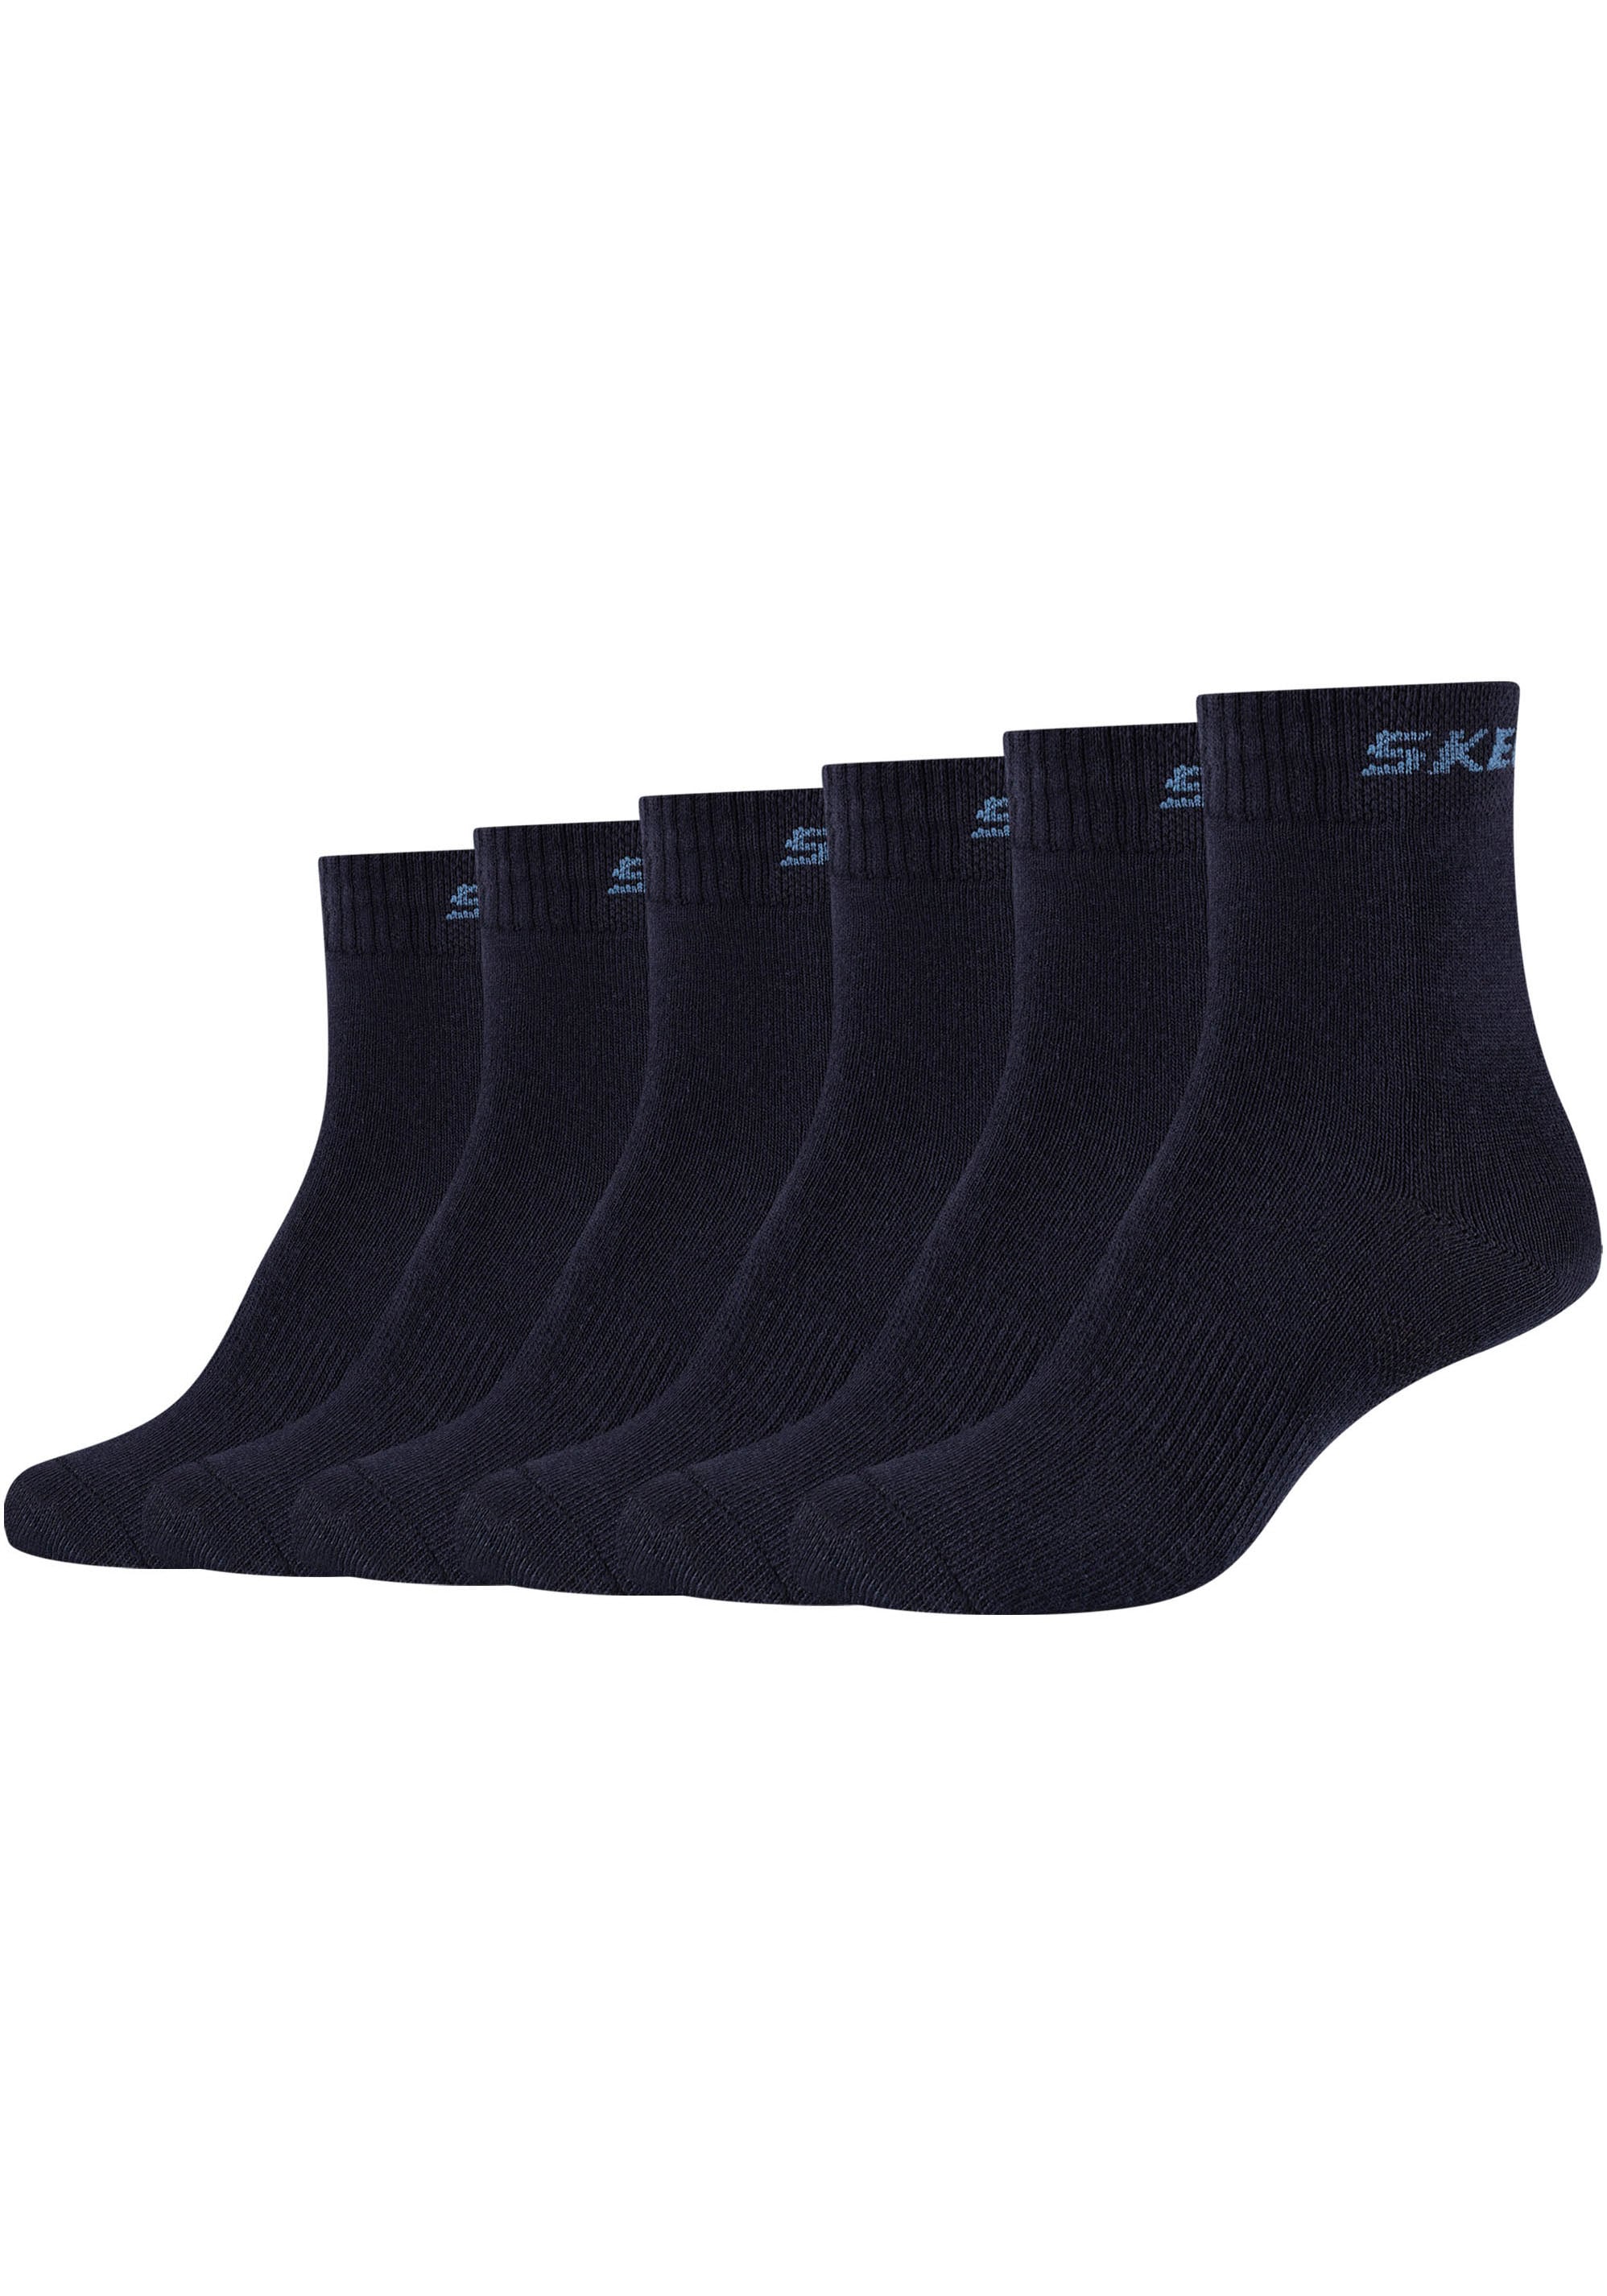 Skechers Socken, (Packung, 6 Paar), Mittelfußunterstützung gibt Stabilität  bestellen bei OTTO